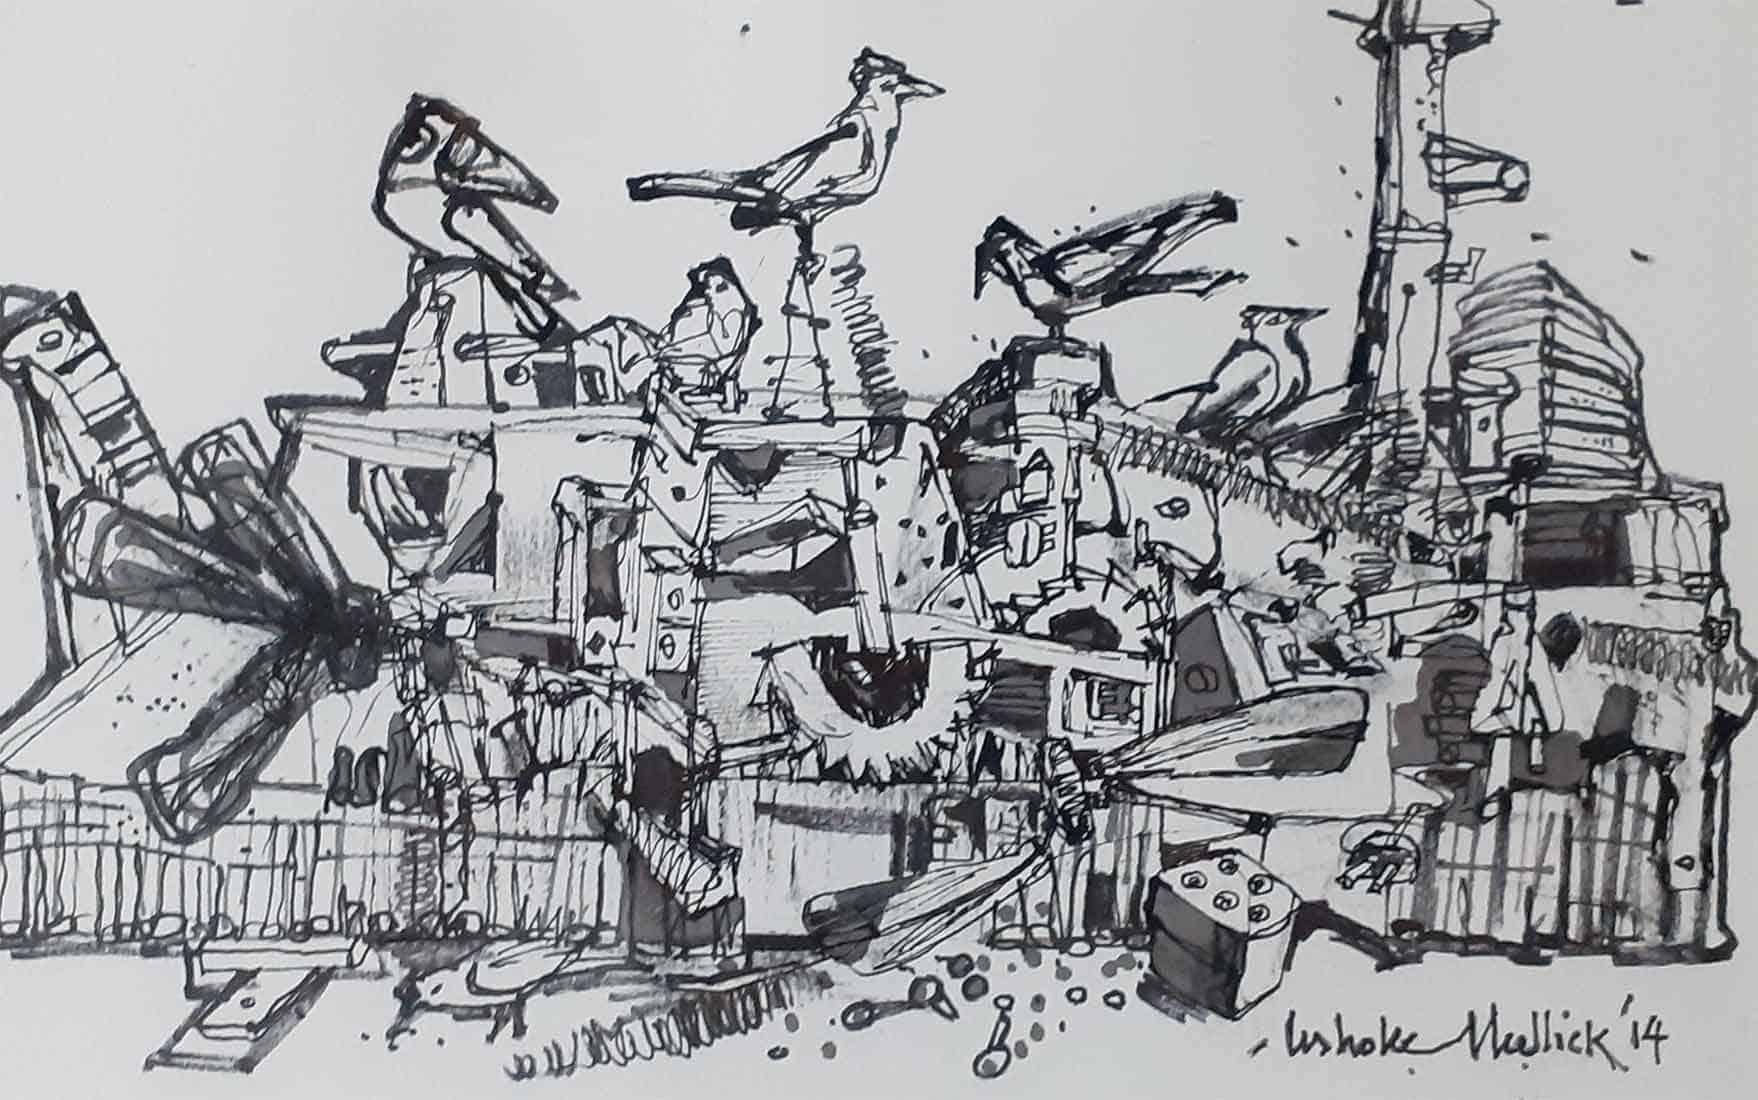 Ashoke Mullick - Sans titre - 9.25 x 12.25 pouces (format non encadré)
Encre sur papier
Comprend l'expédition en rouleau.

Style : Ashoke Mullick est considéré comme l'un des principaux peintres de l'école d'art du Bengale. Condit allie le sens de